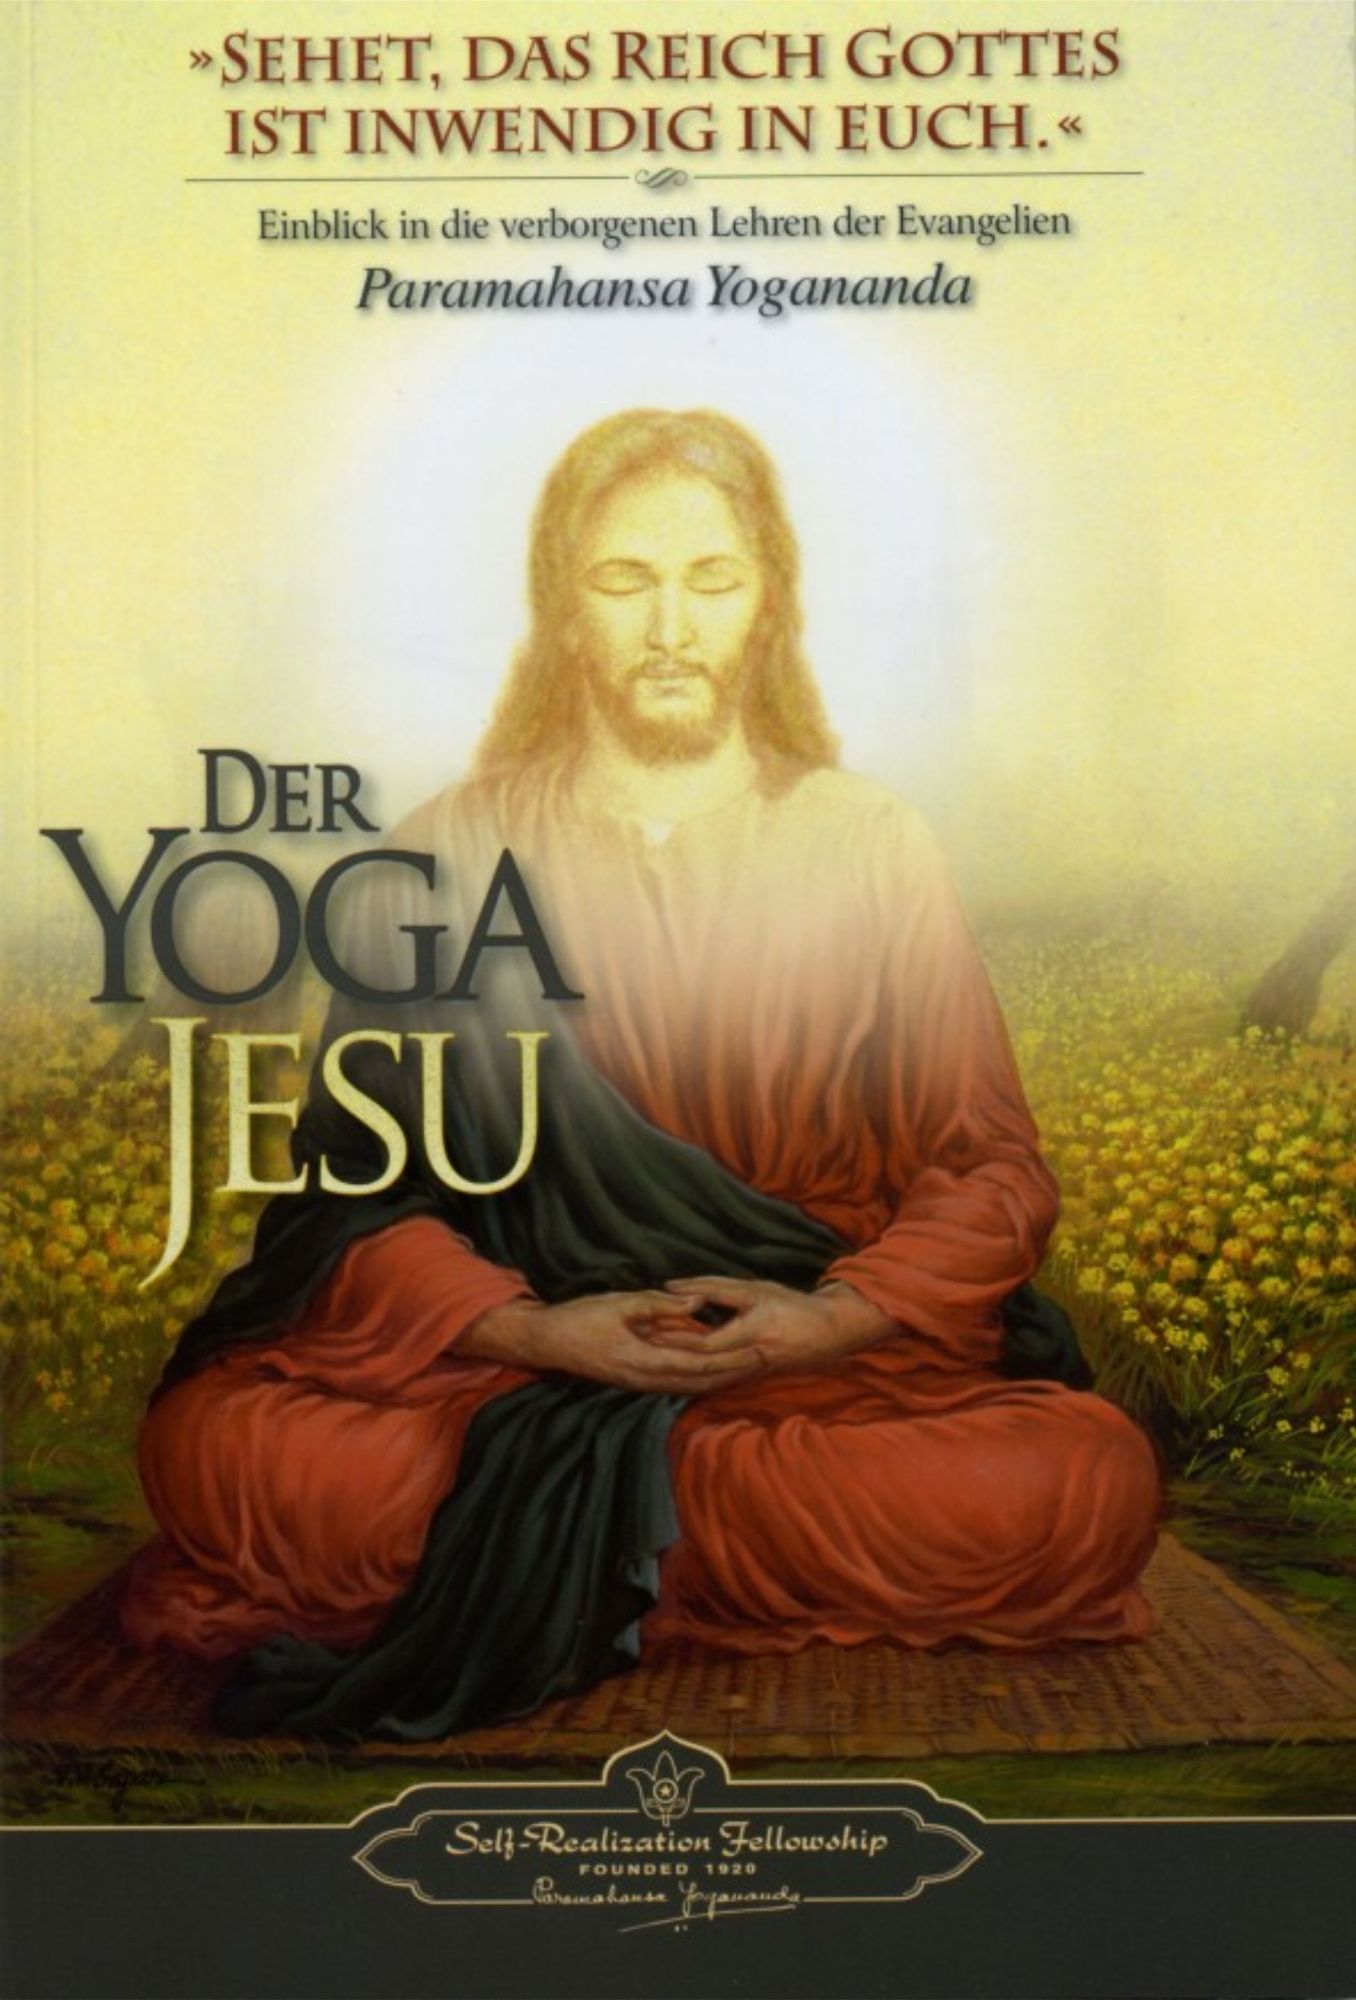 Der Yoga Jesu, Paramahansa Yogananda